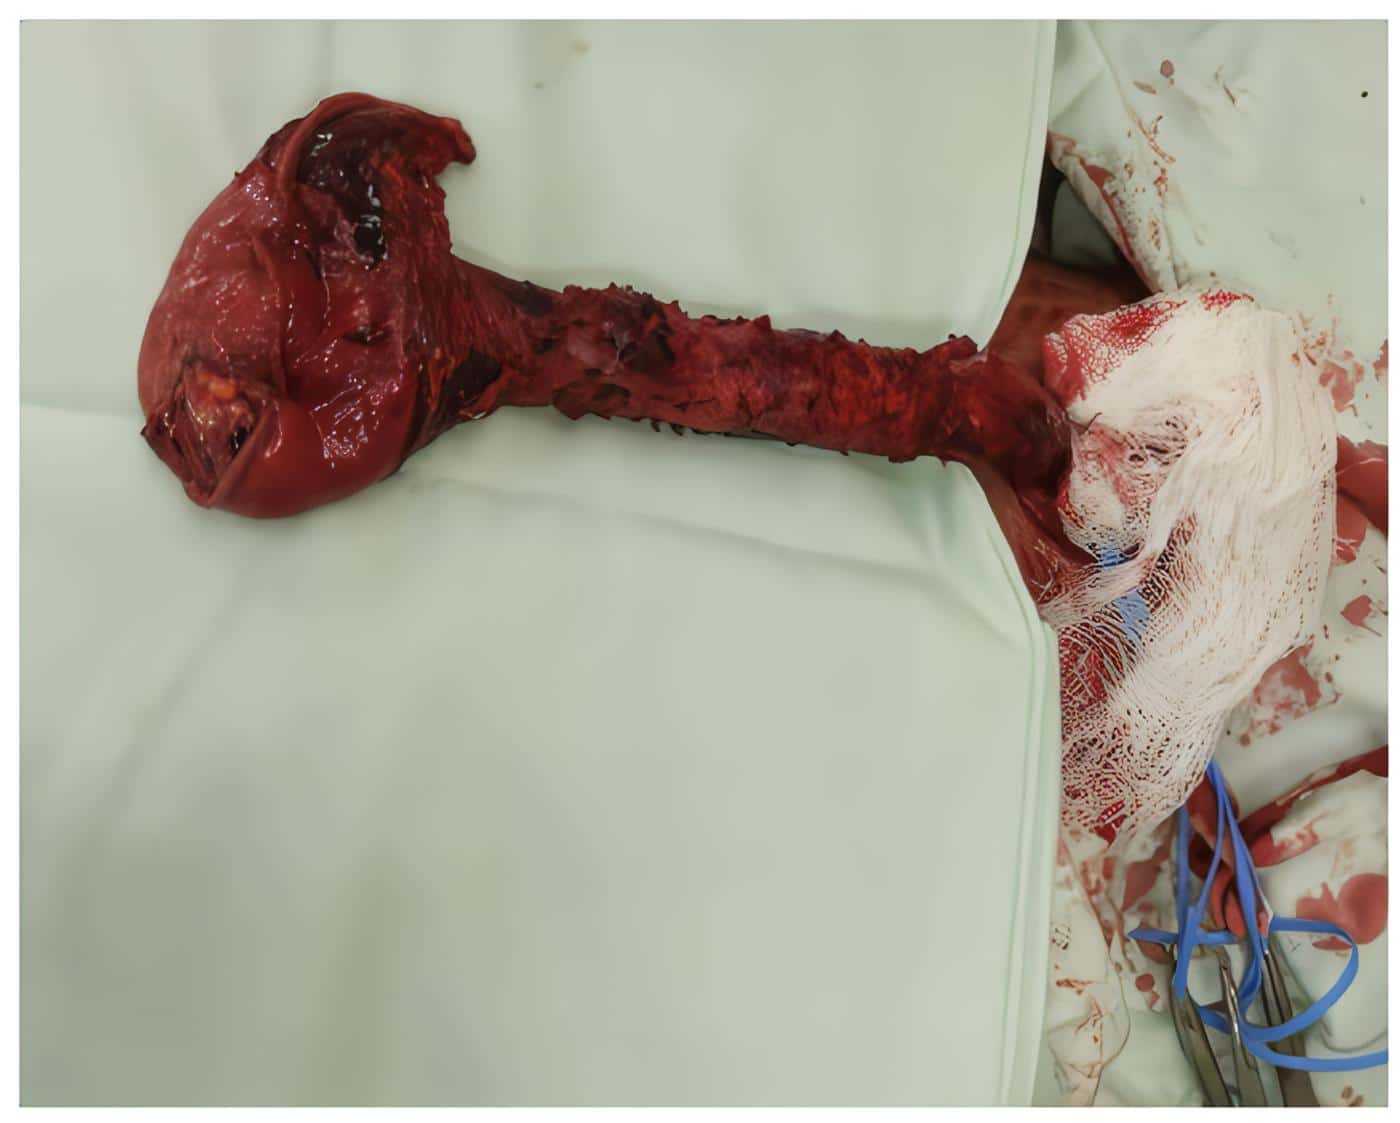 Reemplazo Esofágico Mínimamente Invasivo - Extracción del esófago y segmento gástrico vía transcervical